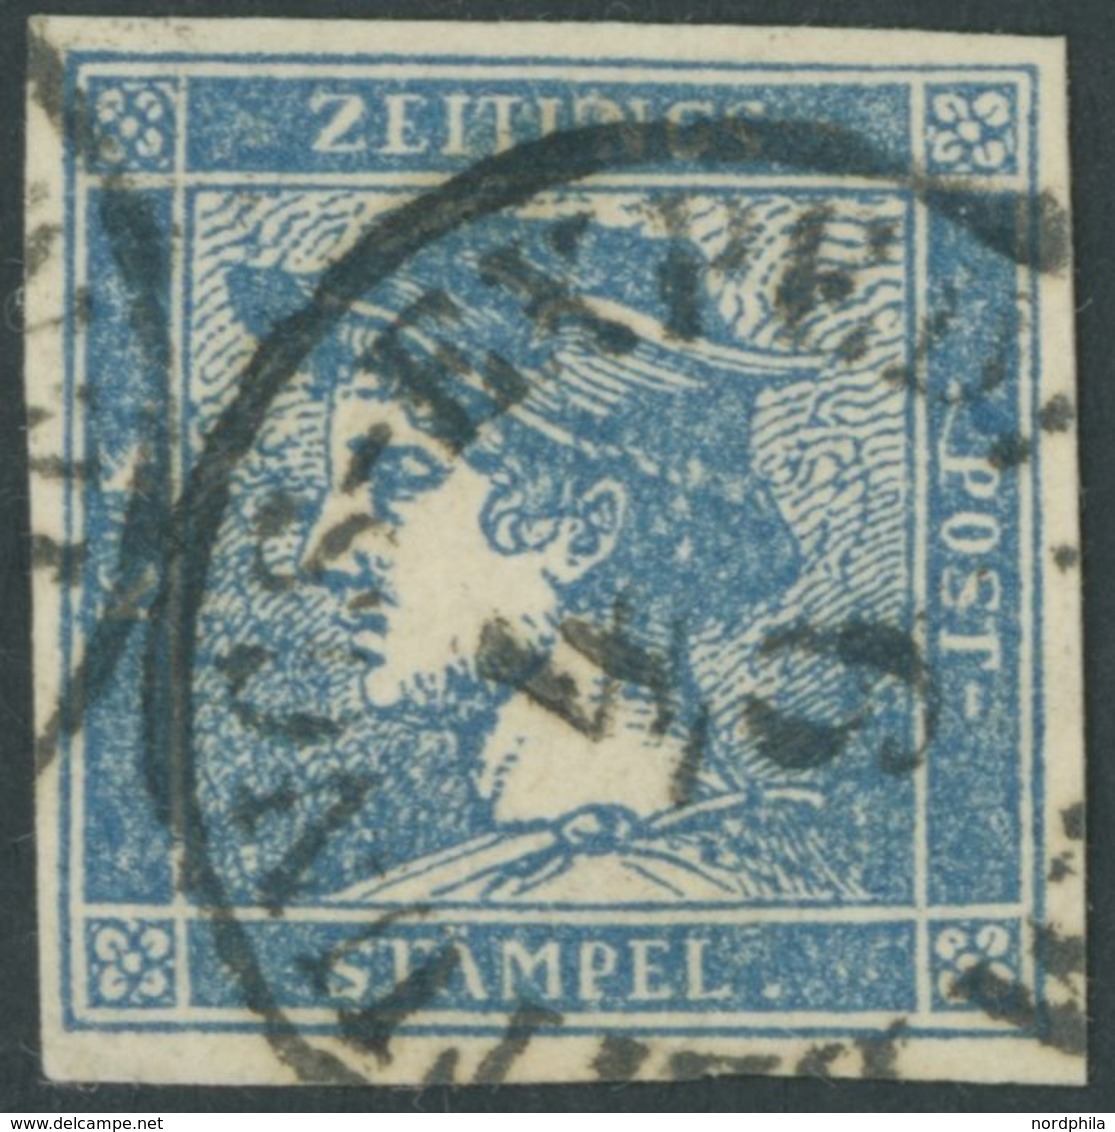 ÖSTERREICH BIS 1867 6I O, 1851, 0.6 Kr. Blau, Type Ib, K1 ZEITUNGS-EXPEDITION, Pracht - Usados